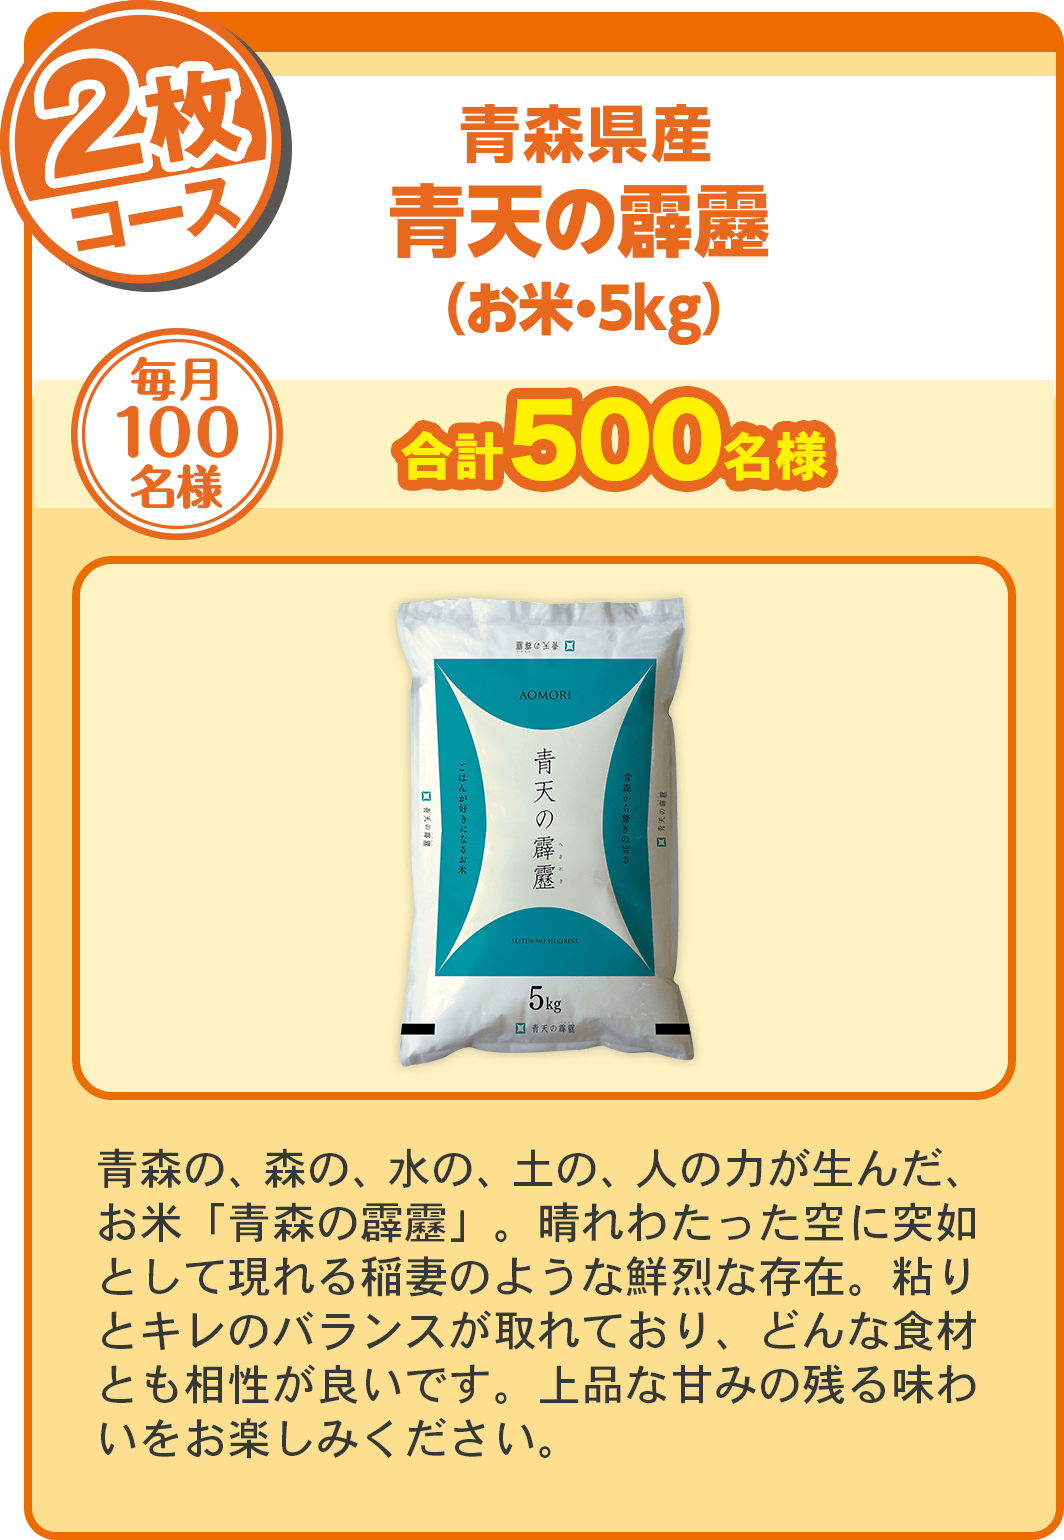 「北海道から日本一のお米を」という「夢」から誕生したのが「ゆめぴりか」です。炊き上げりはふっくらと柔らかく、モチモチとした食感の程よい甘みをぜひご賞味ください。